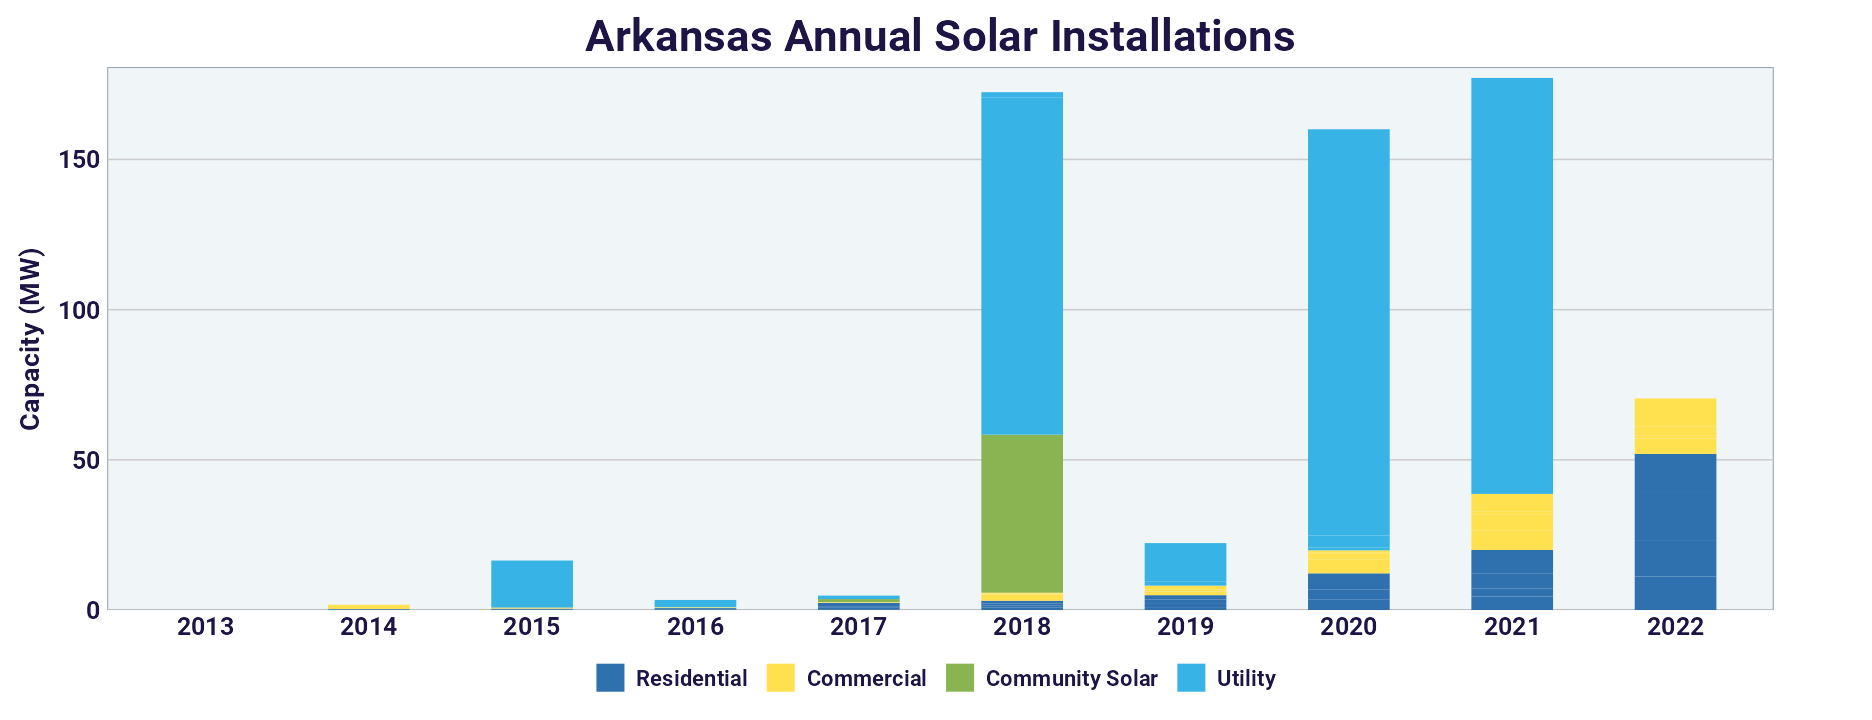 Arkansas Annual Solar Installations